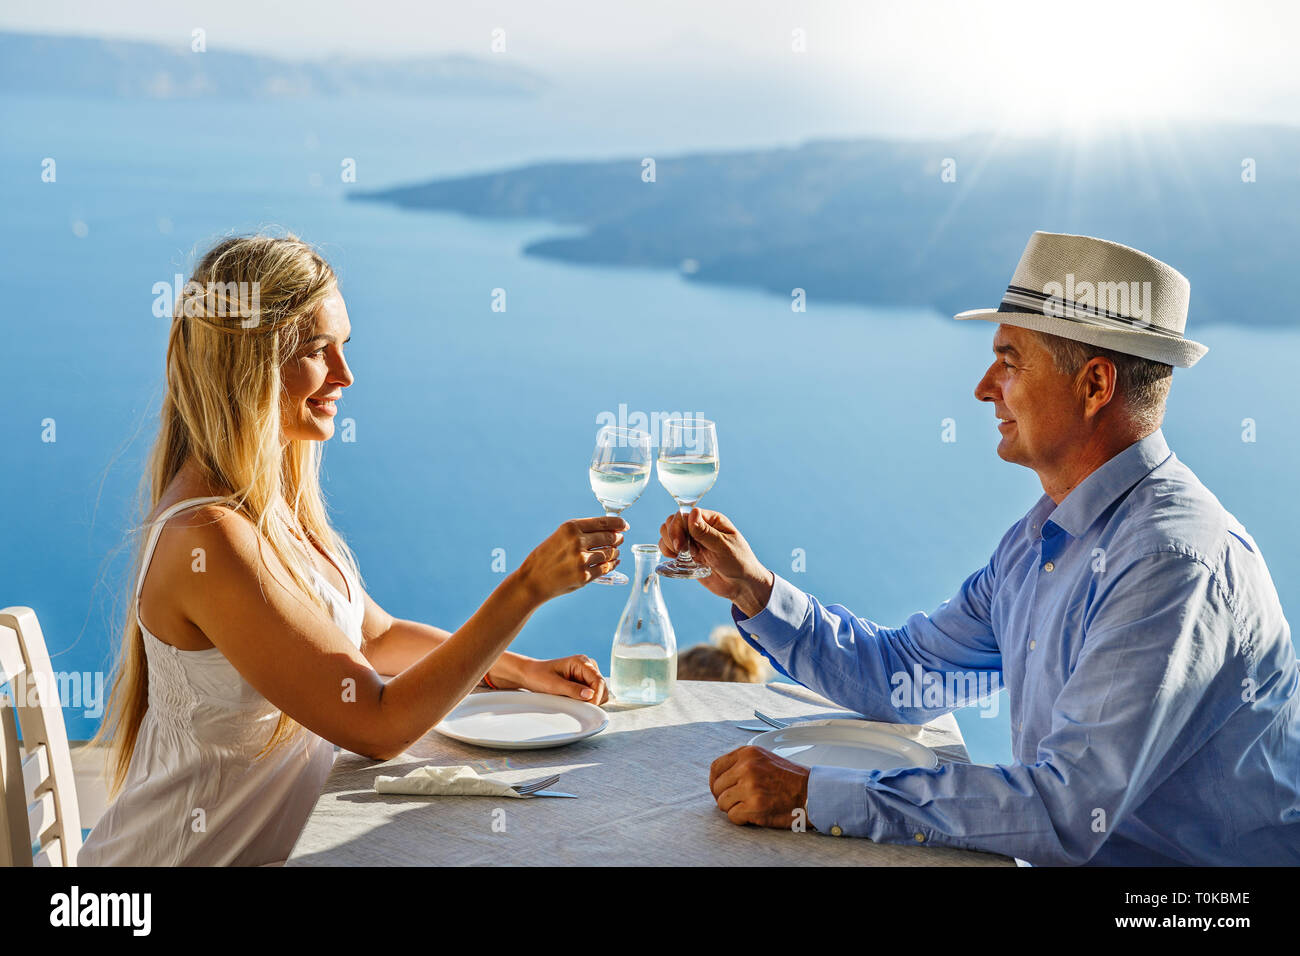 Nach paar Essen und trinken Wein in einem Restaurant auf dem Hintergrund des Meeres Stockfoto